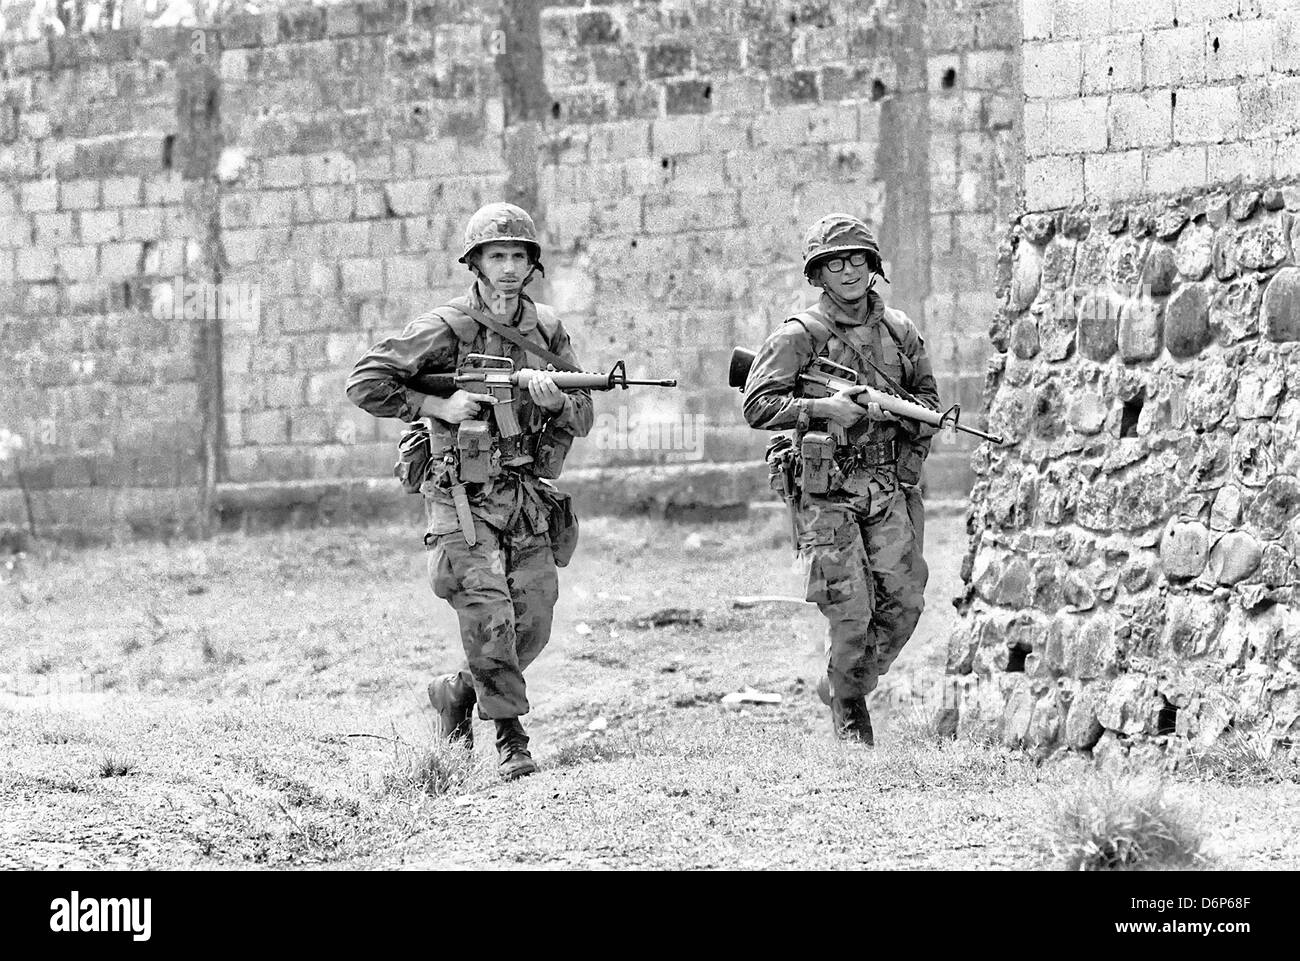 Los Marines armados con M16A1 rifle patrulla la zona alrededor de Grenville durante la invasión de Granada, denominada Operación Furia urgente Octubre 25, 1983 en Grenville, Granada. La invasión comenzó el 25 de octubre de 1983 y fue la primera gran acción militar de los Estados Unidos desde el final de la guerra de Vietnam. Foto de stock